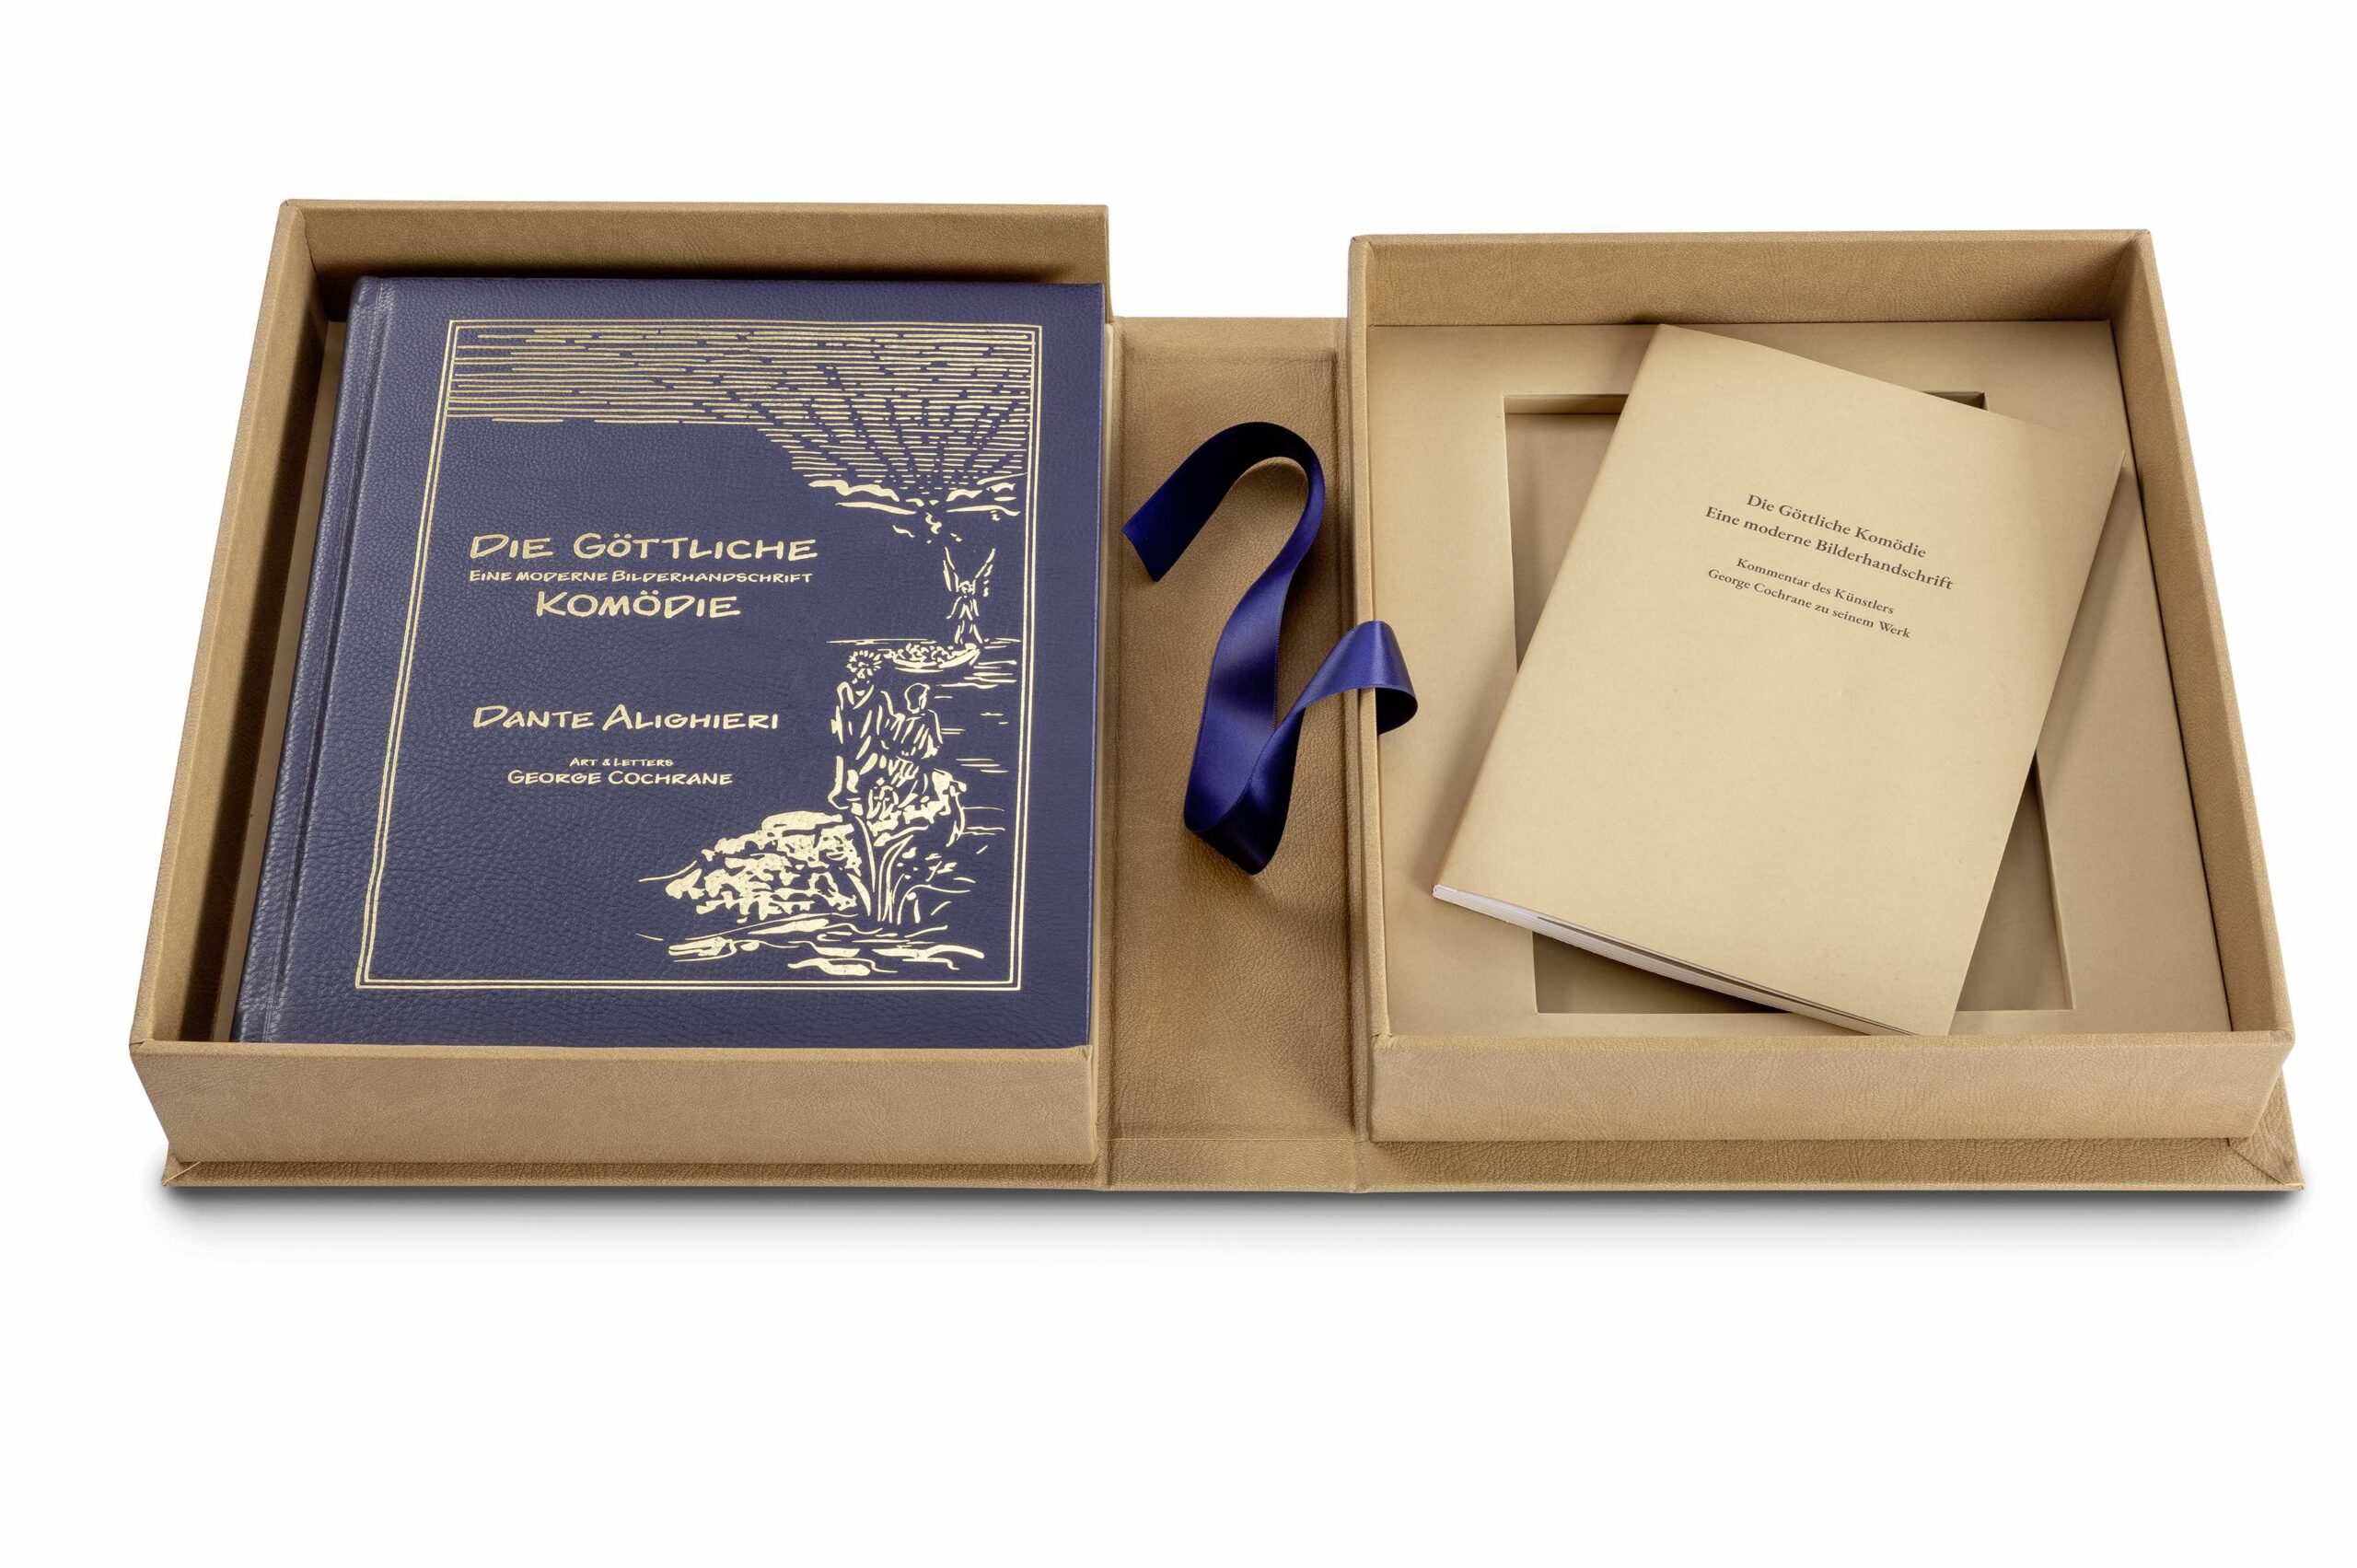 Faksimile-Ausgabe von Dantes göttlicher Komödie mit aufgeschlagener Schmuckkassette. Das Faksimile mit goldgeprägten Ledereinband liegt in der Kassette.